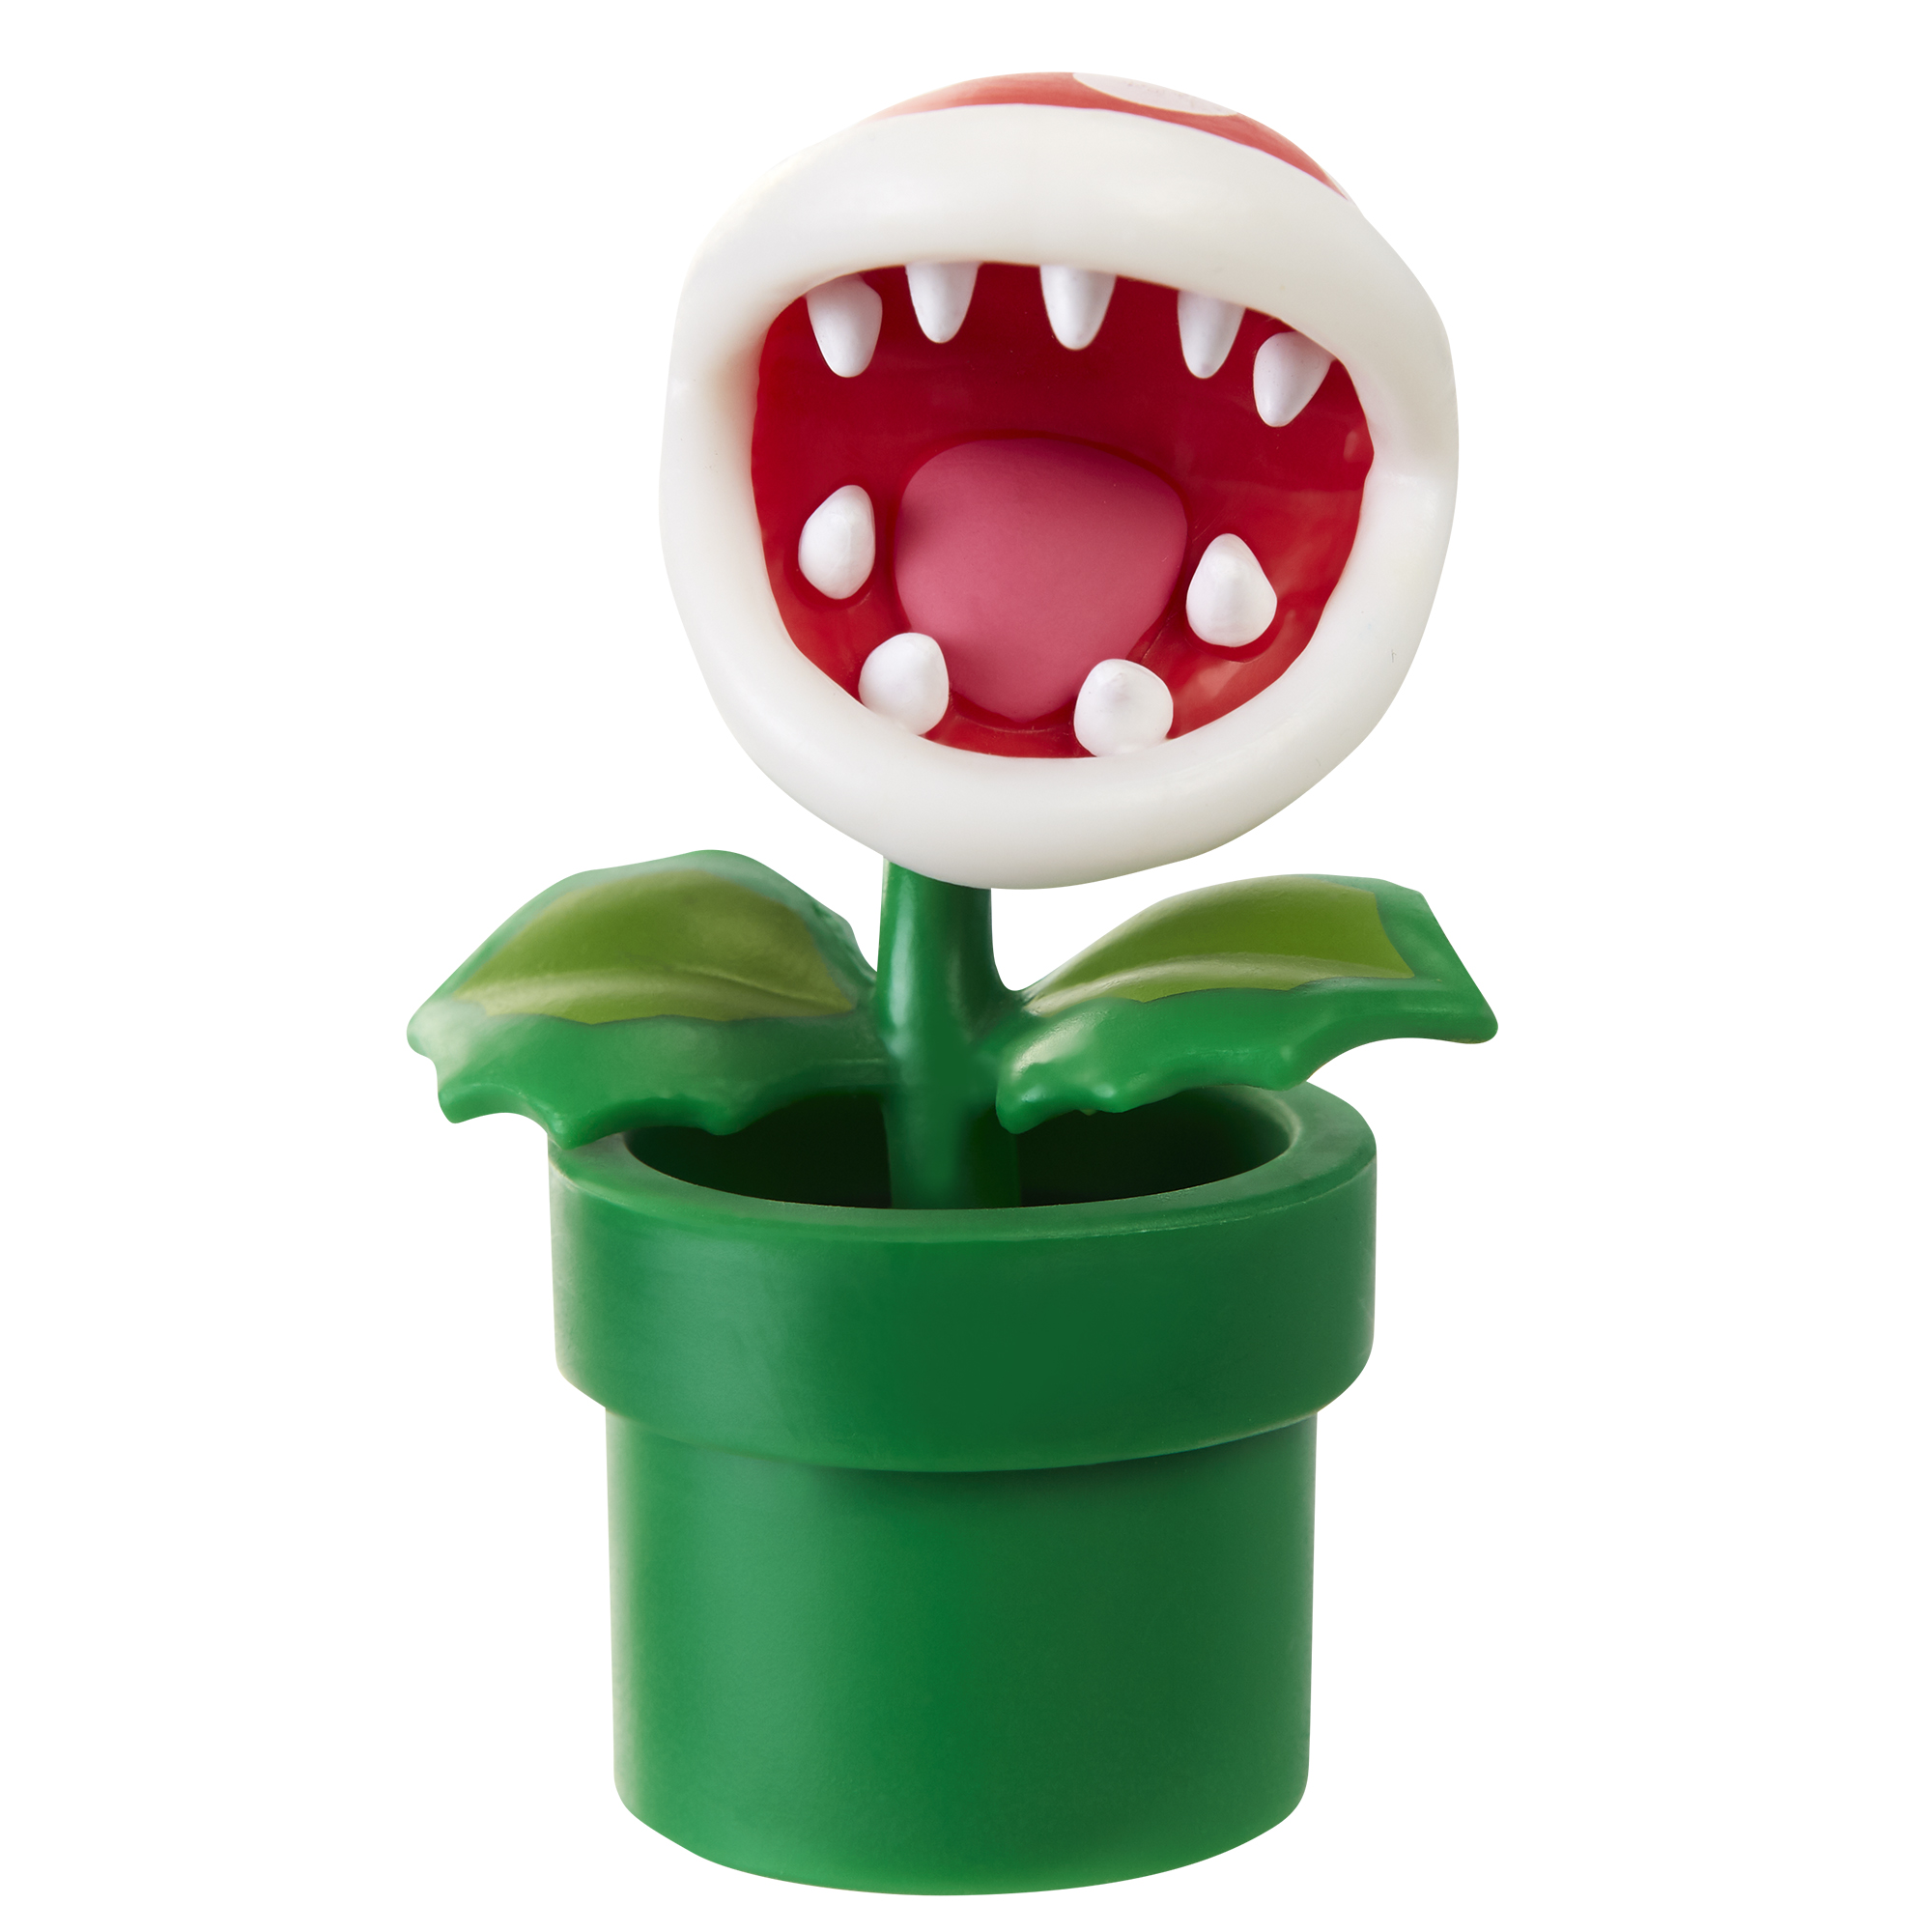 Super Mario Articulated Action Figure 2.5″ Piranha Plant